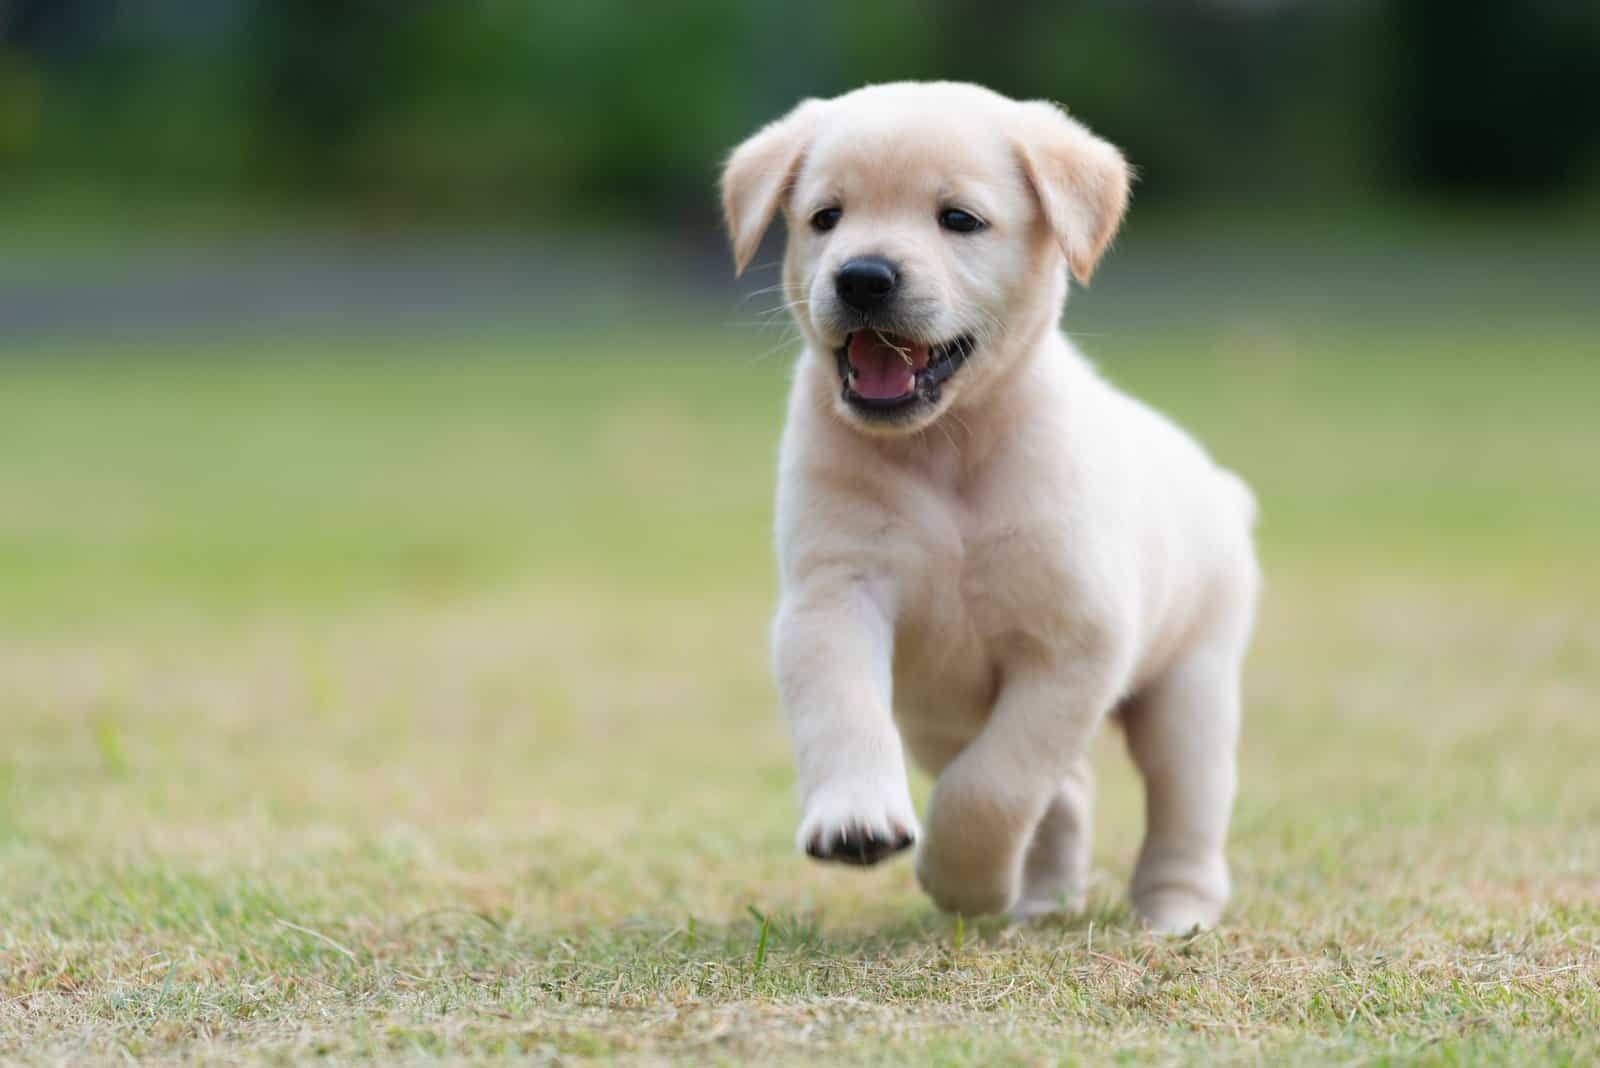 cute golden retriever puppy running outdoor